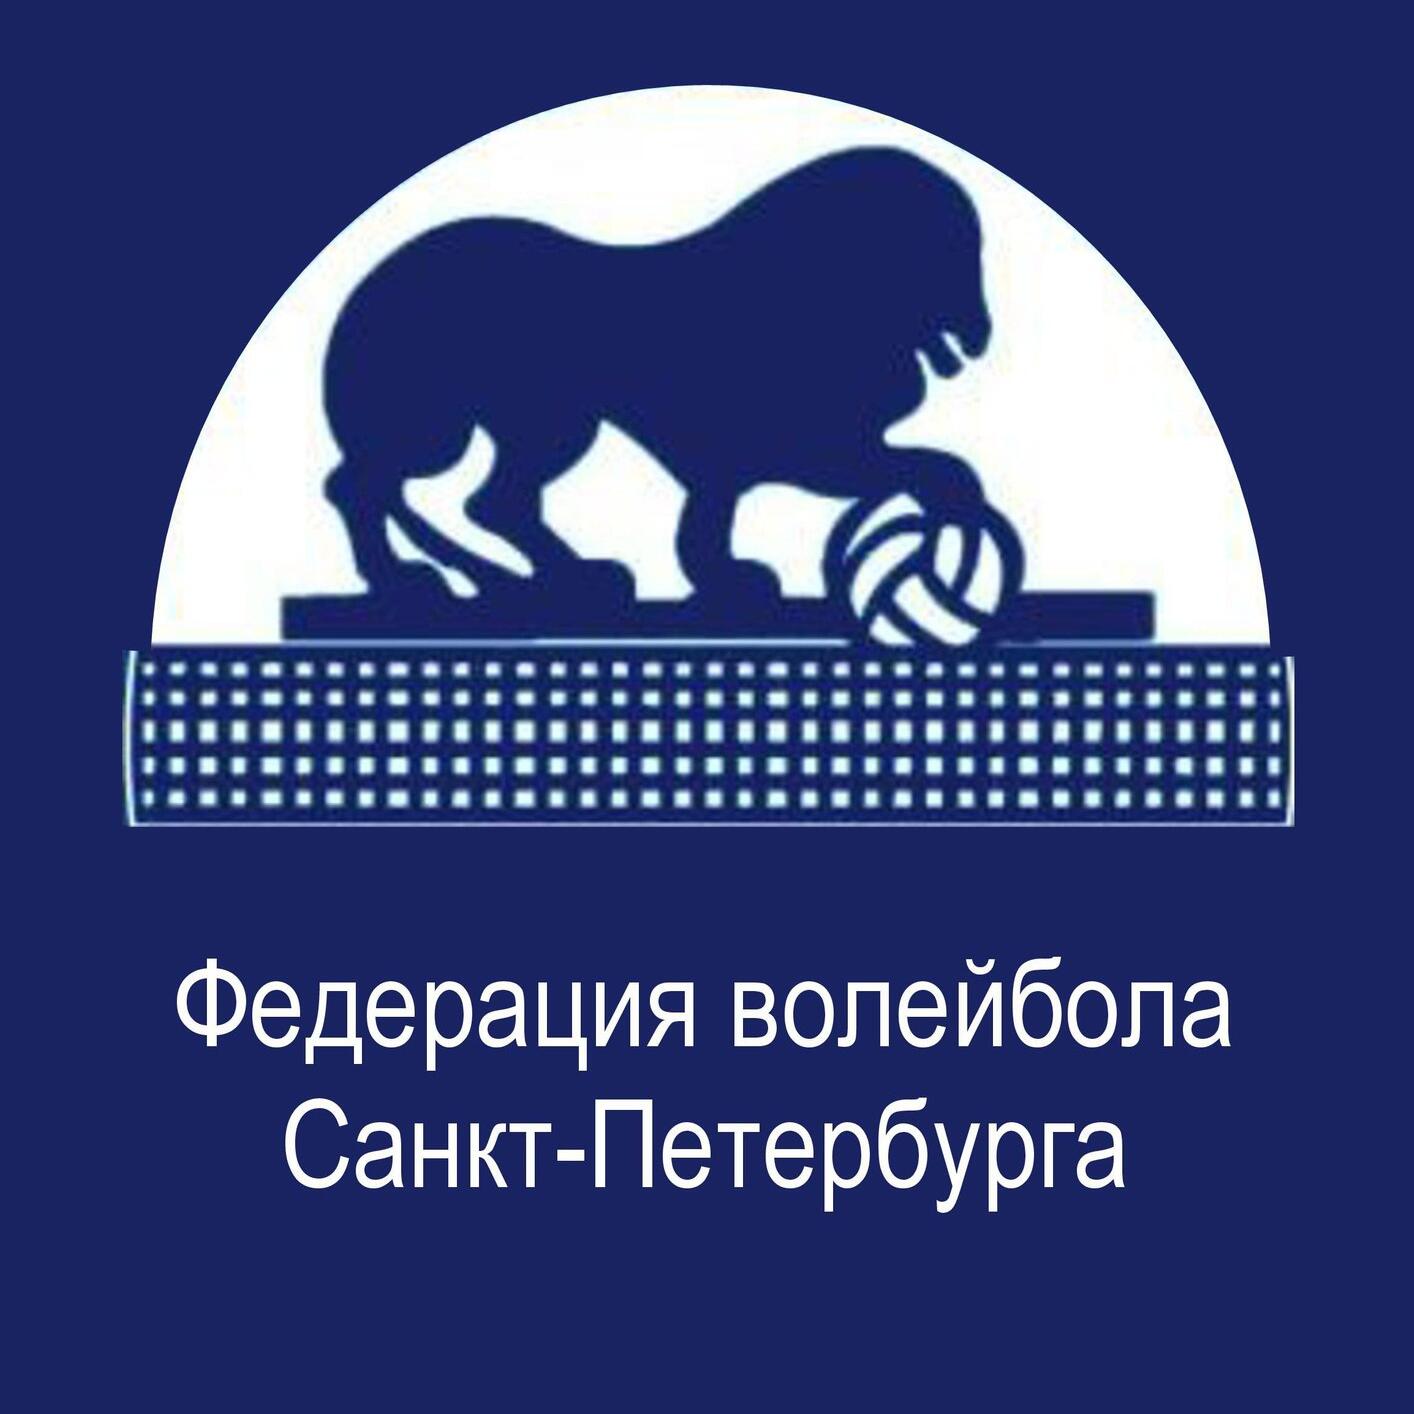 Родительский портал - Федерация волейбола Санкт-Петербурга